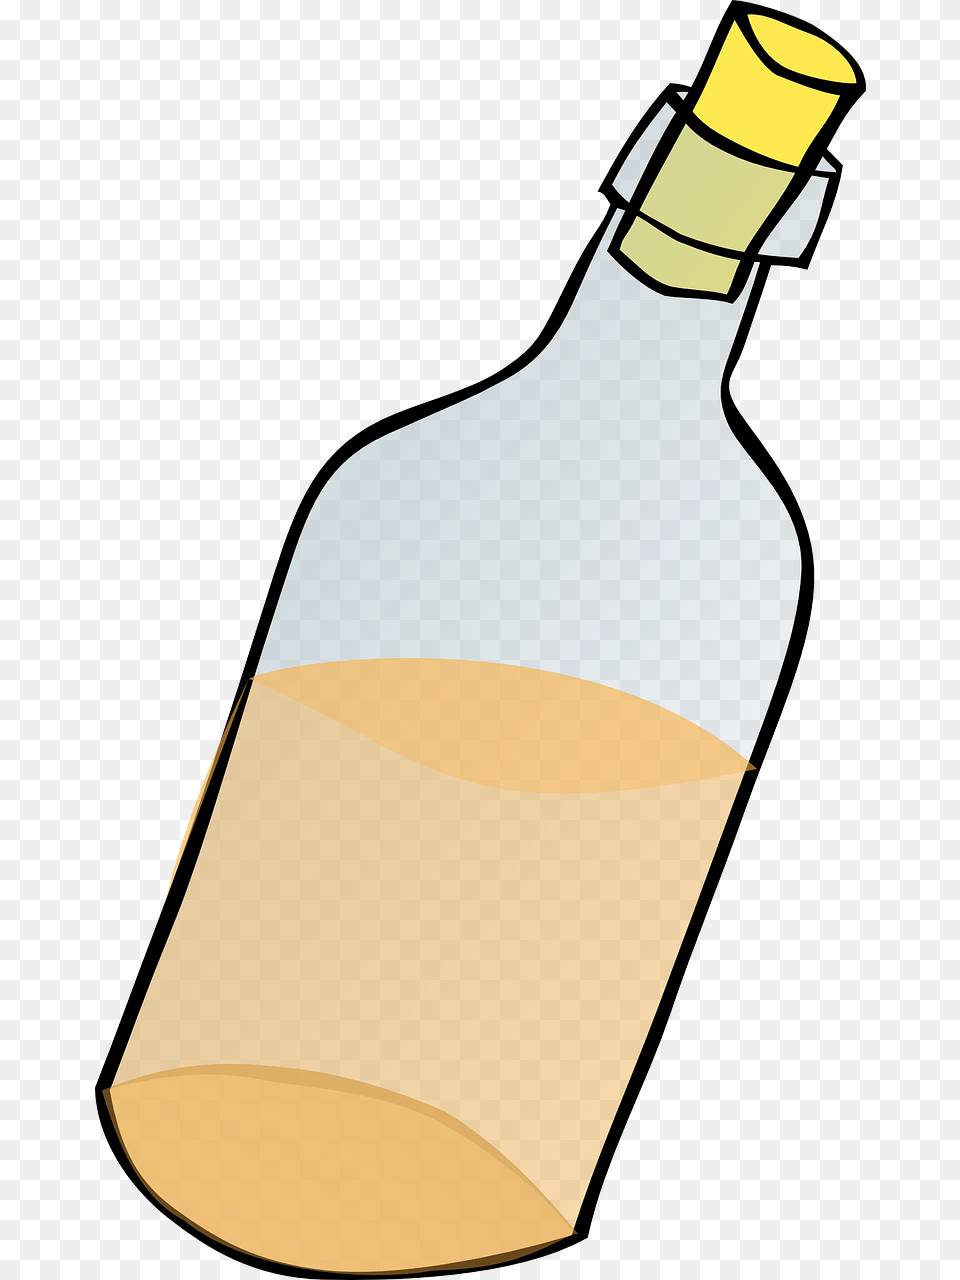 Cartoon Letter In A Bottle, Alcohol, Wine, Liquor, Wine Bottle Free Png